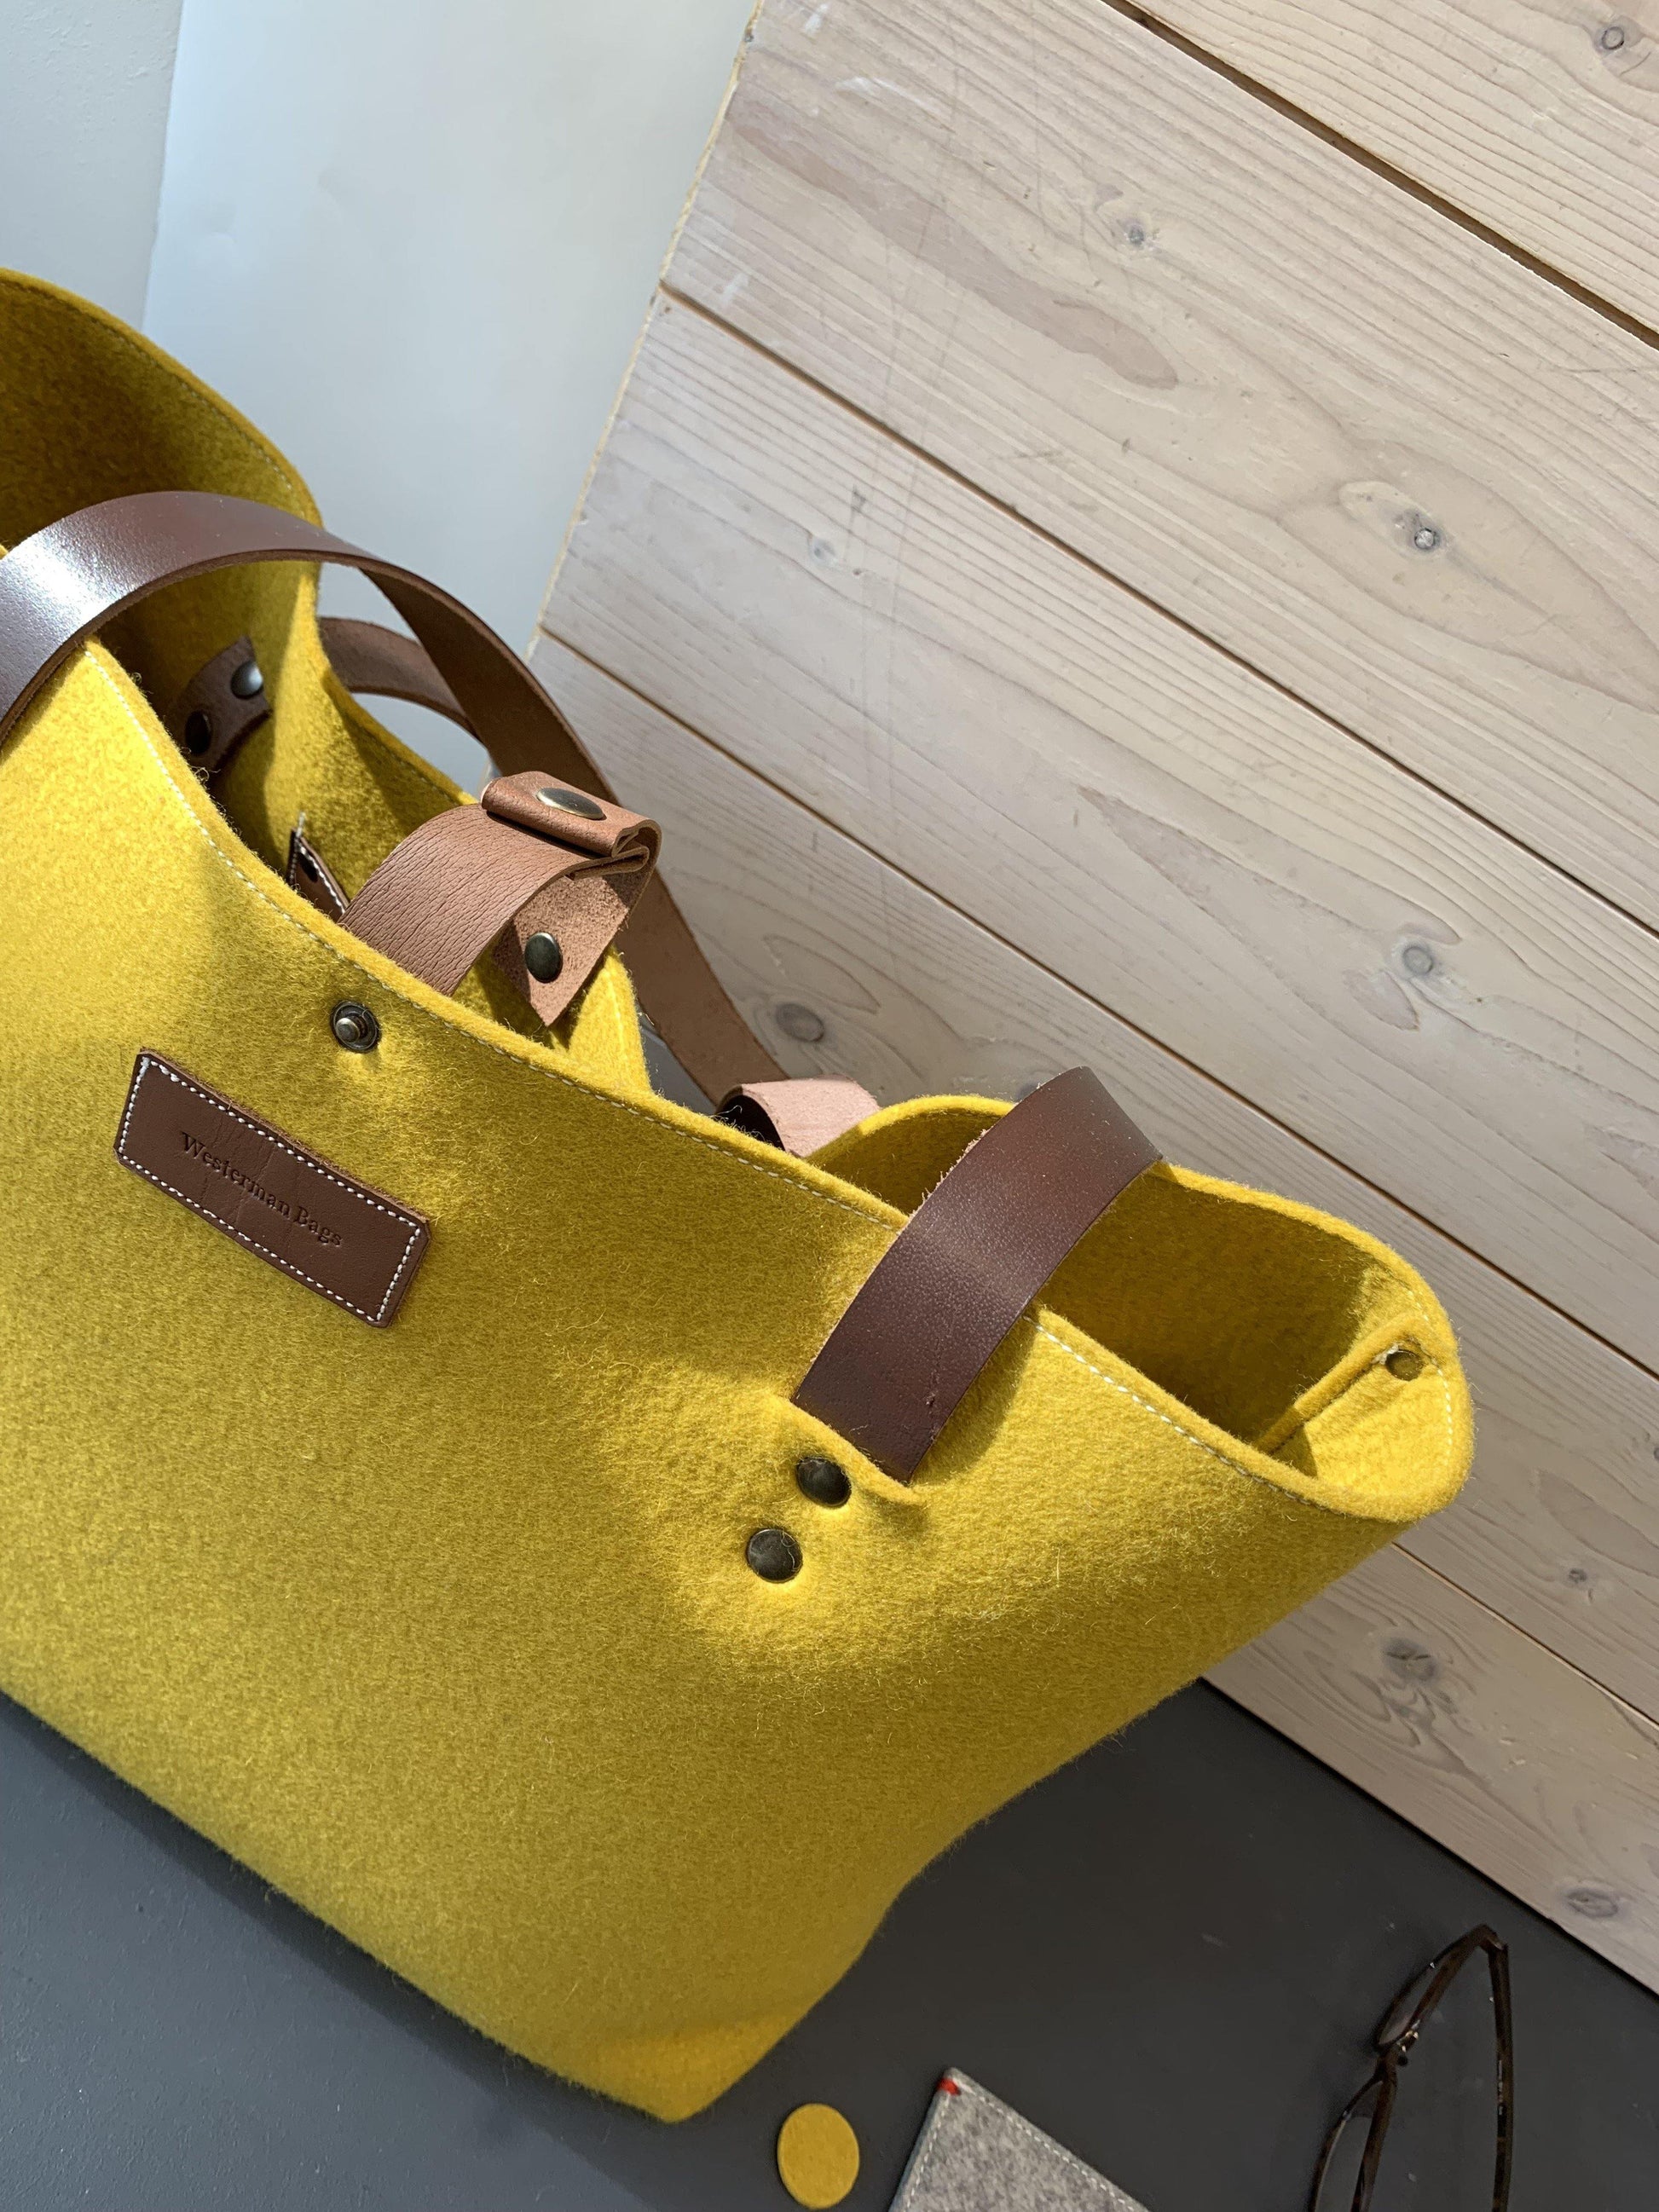 GRIFT XL vilten tas, grijs en geel, met rits | Large felt shopper bag with zipper in yellow and grey - Westerman Bags vilten tassen en hoezen. Dutch Design.